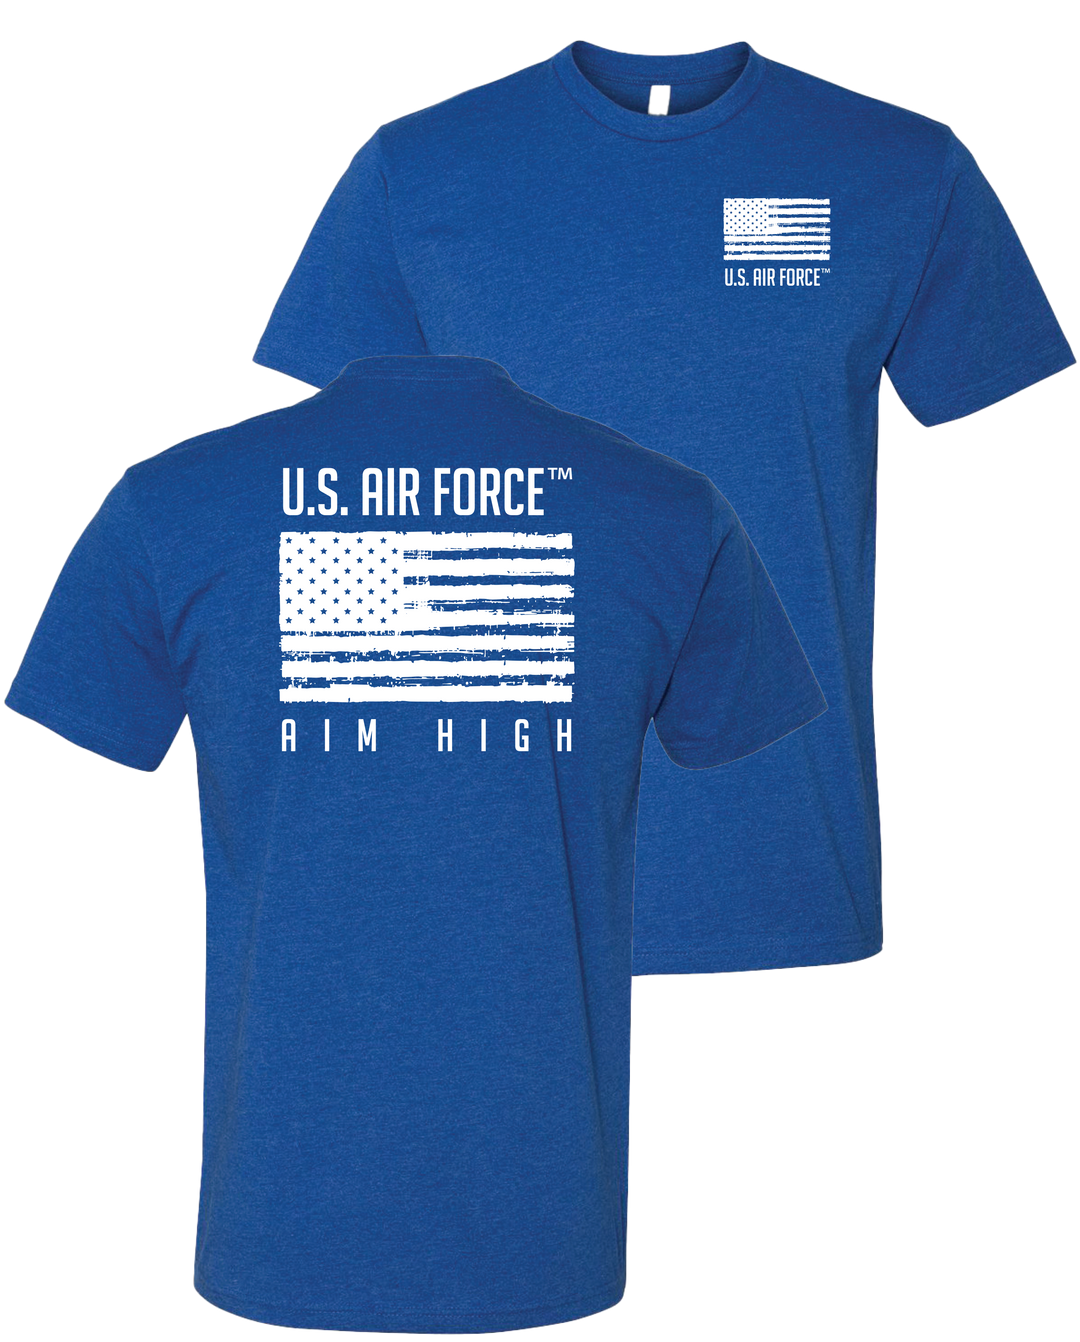 U.S. Air Force Aim High T-Shirt (Blue)